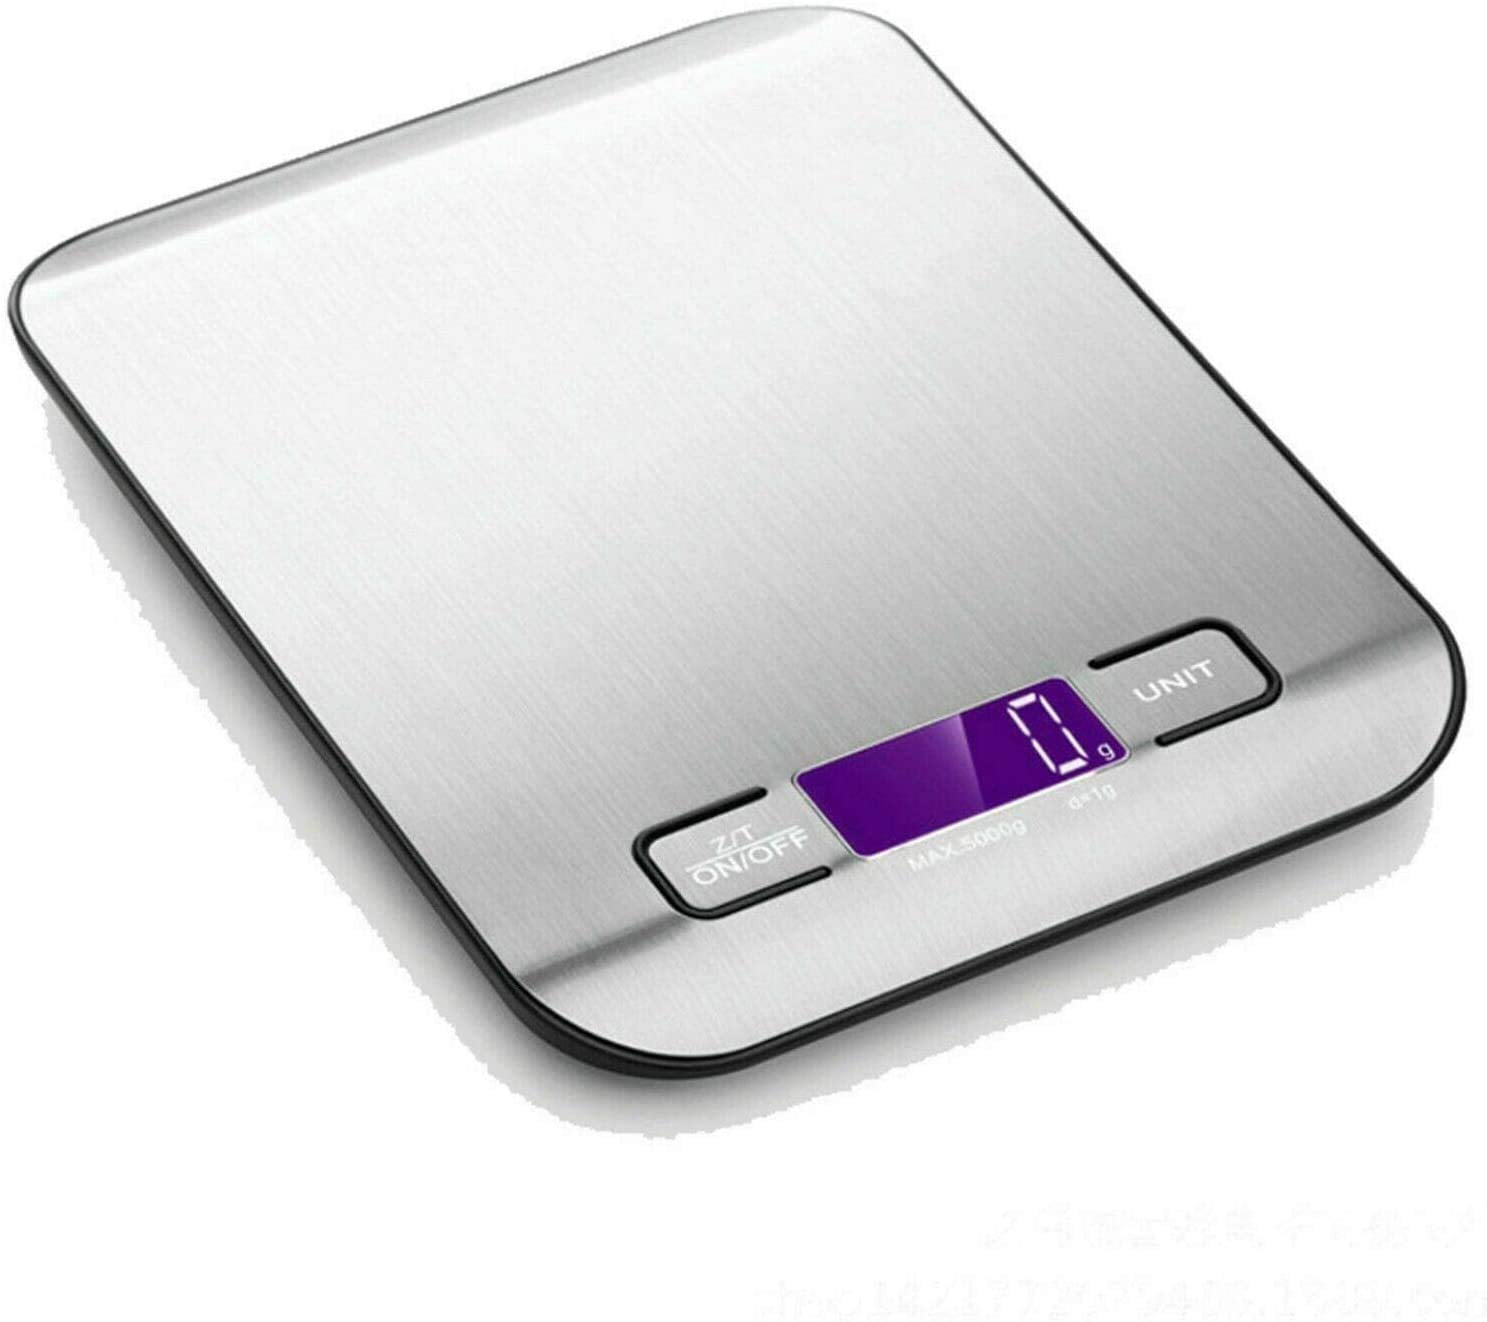 Báscula digital de cocina SF peso bascula electrónica 1g A 5kg